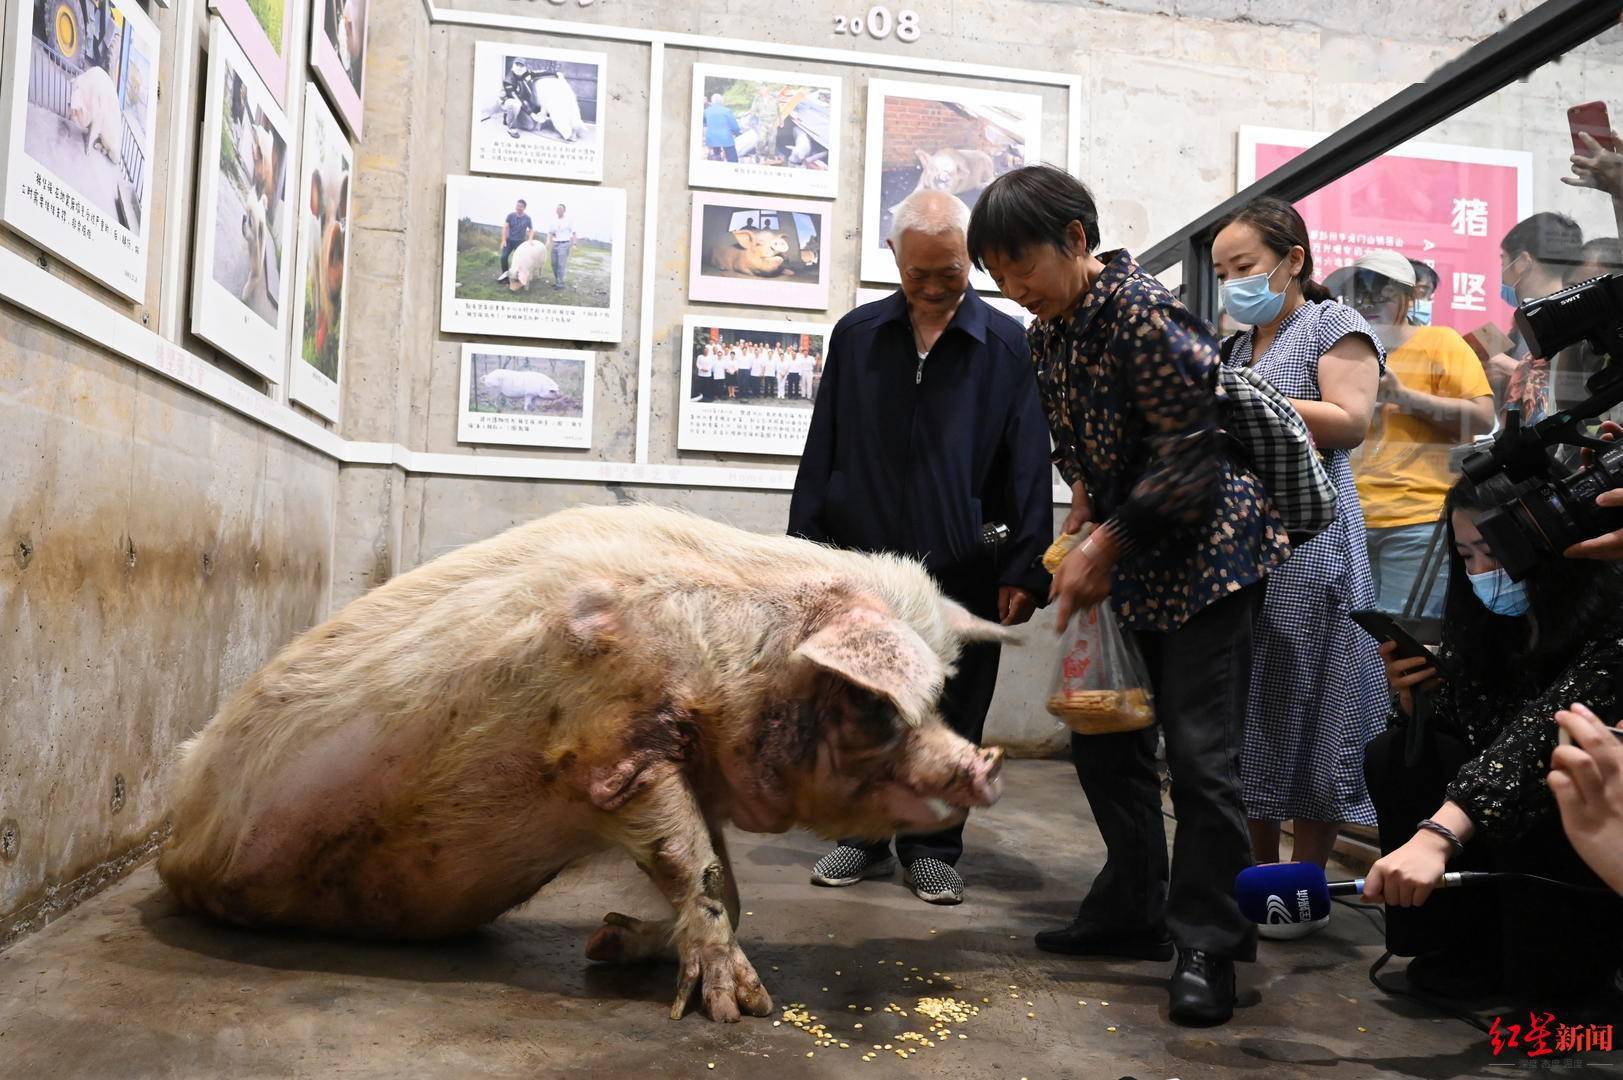 猪坚强 去世 曾在地震废墟下坚持36天 代表灾难中的励志精神 建川博物馆